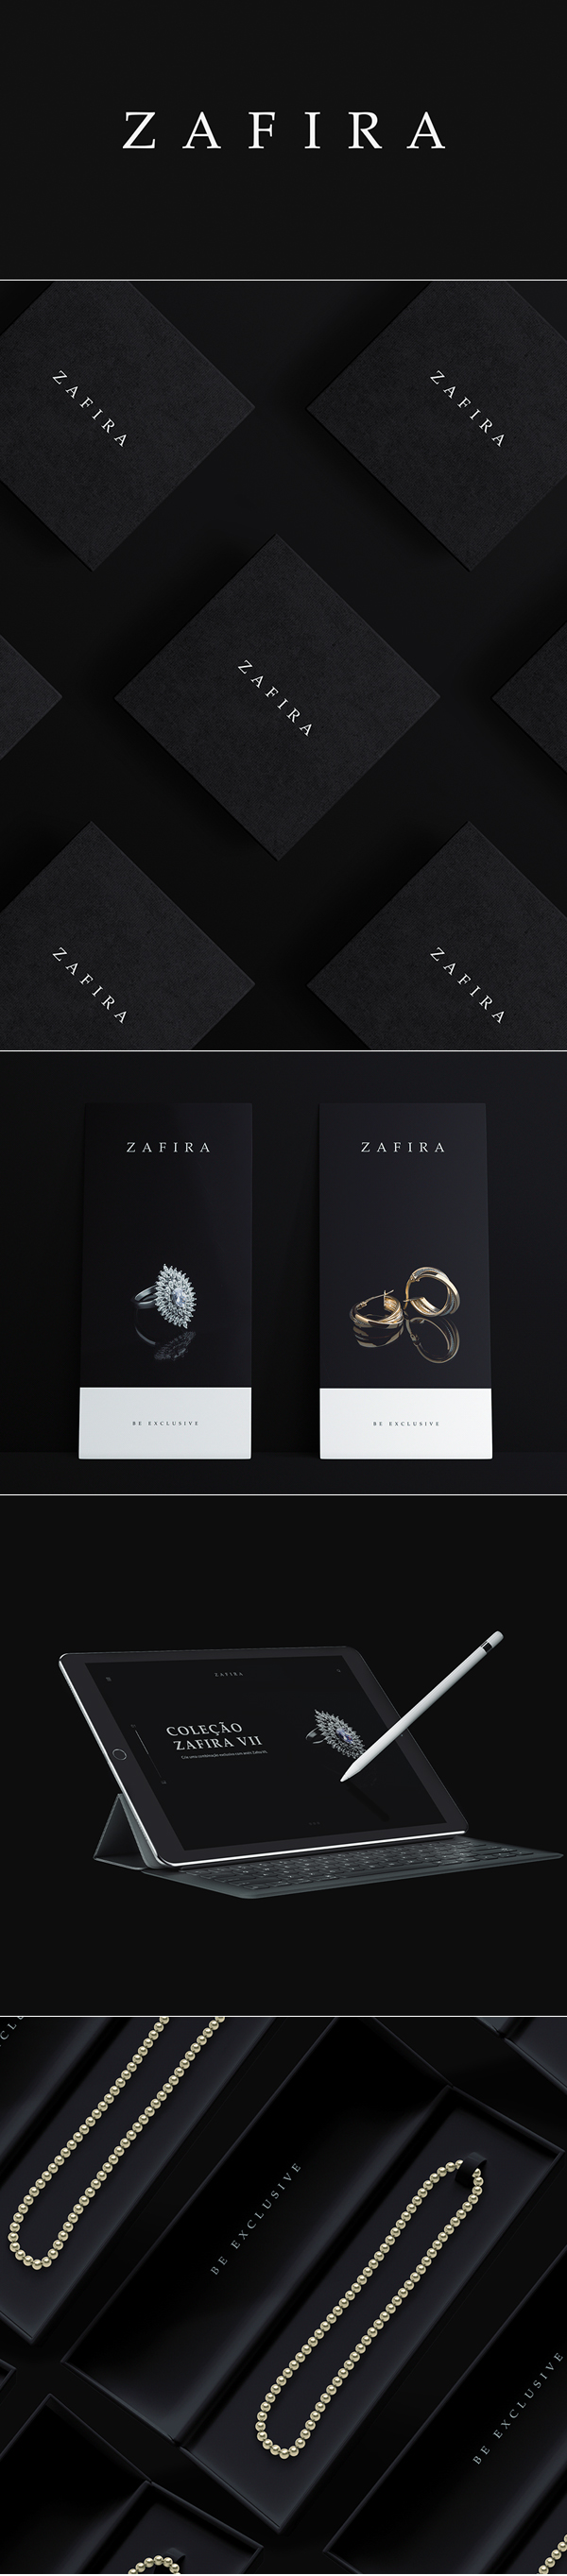 Zafira - Identidade Visual by check dsgn